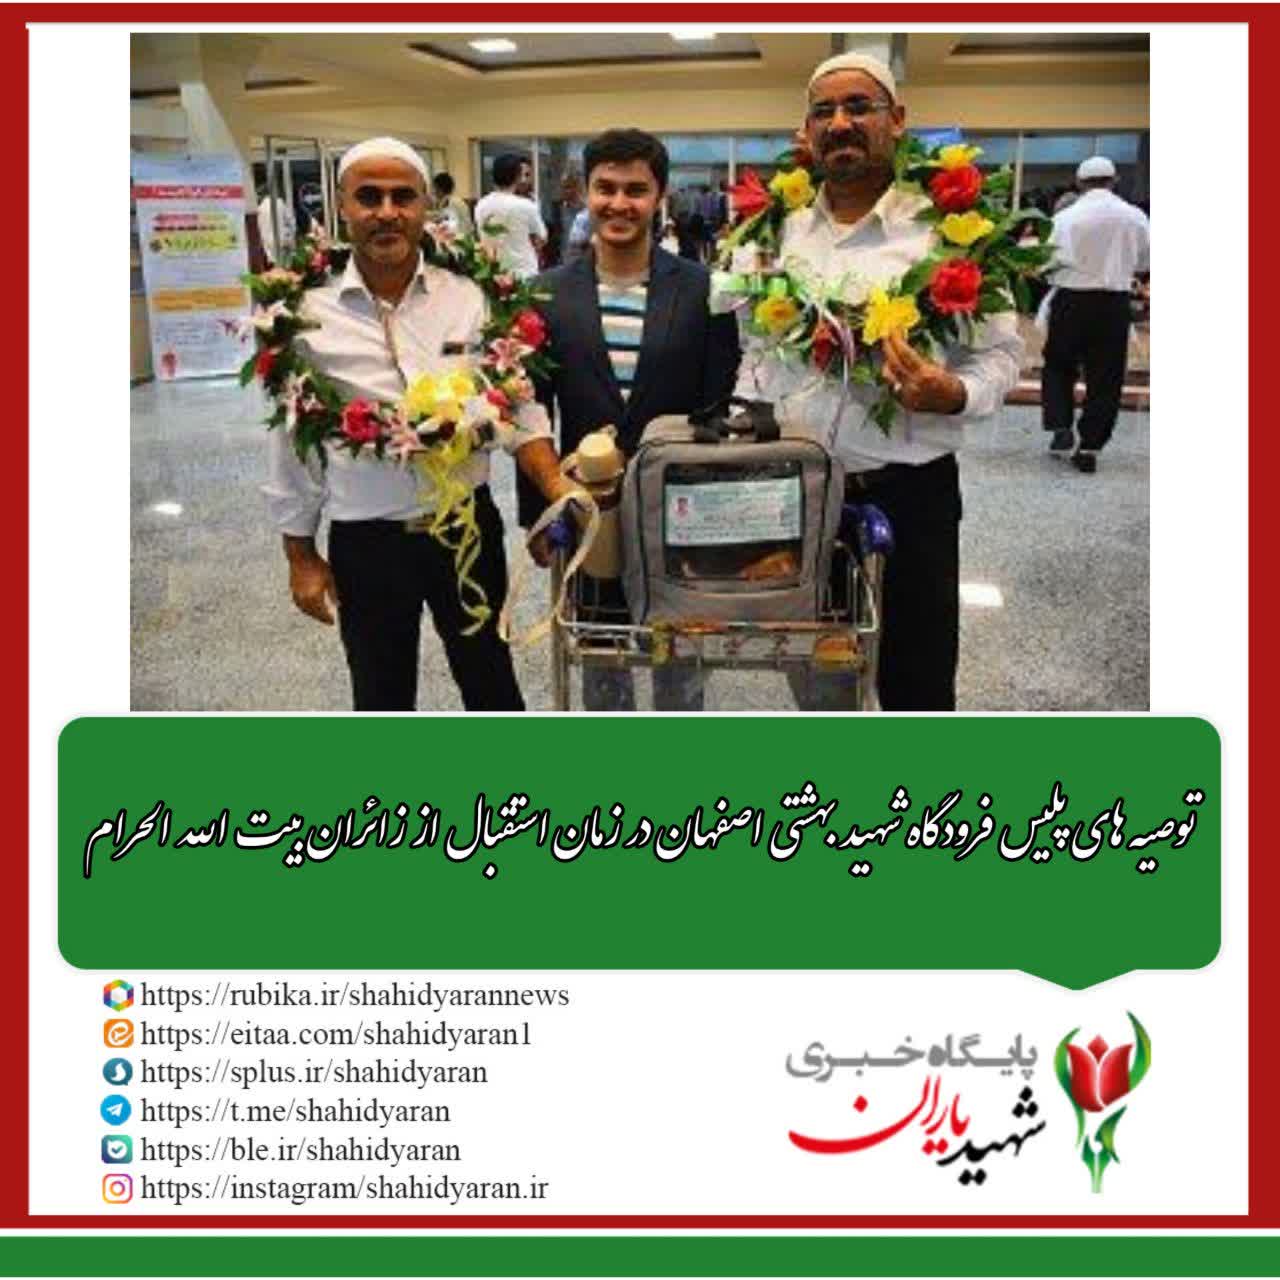 توصیه های پلیس فرودگاه شهید بهشتی اصفهان در زمان استقبال از زائران بیت الله الحرام